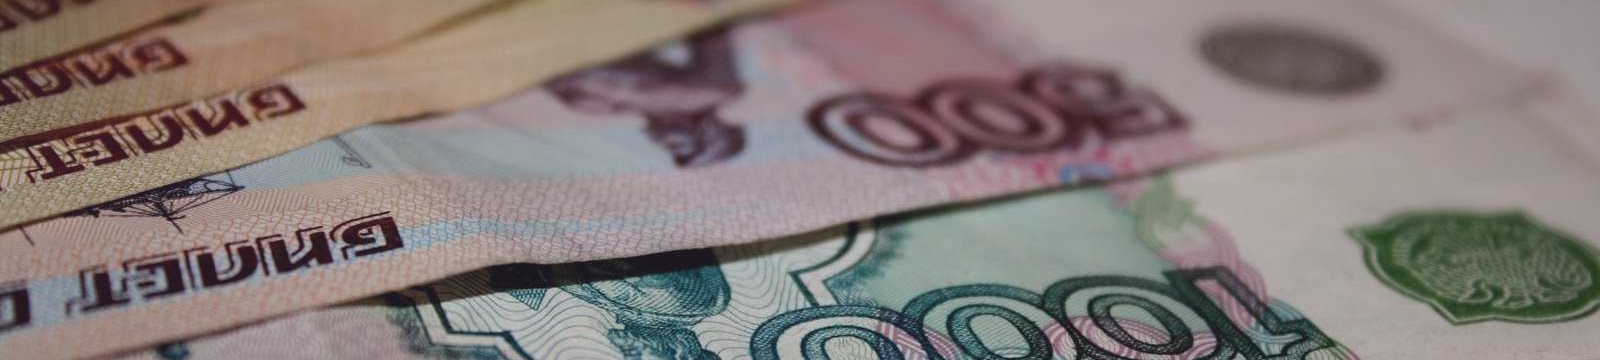 Альфа-банк спрогнозировал «взрывной» обвал рубля